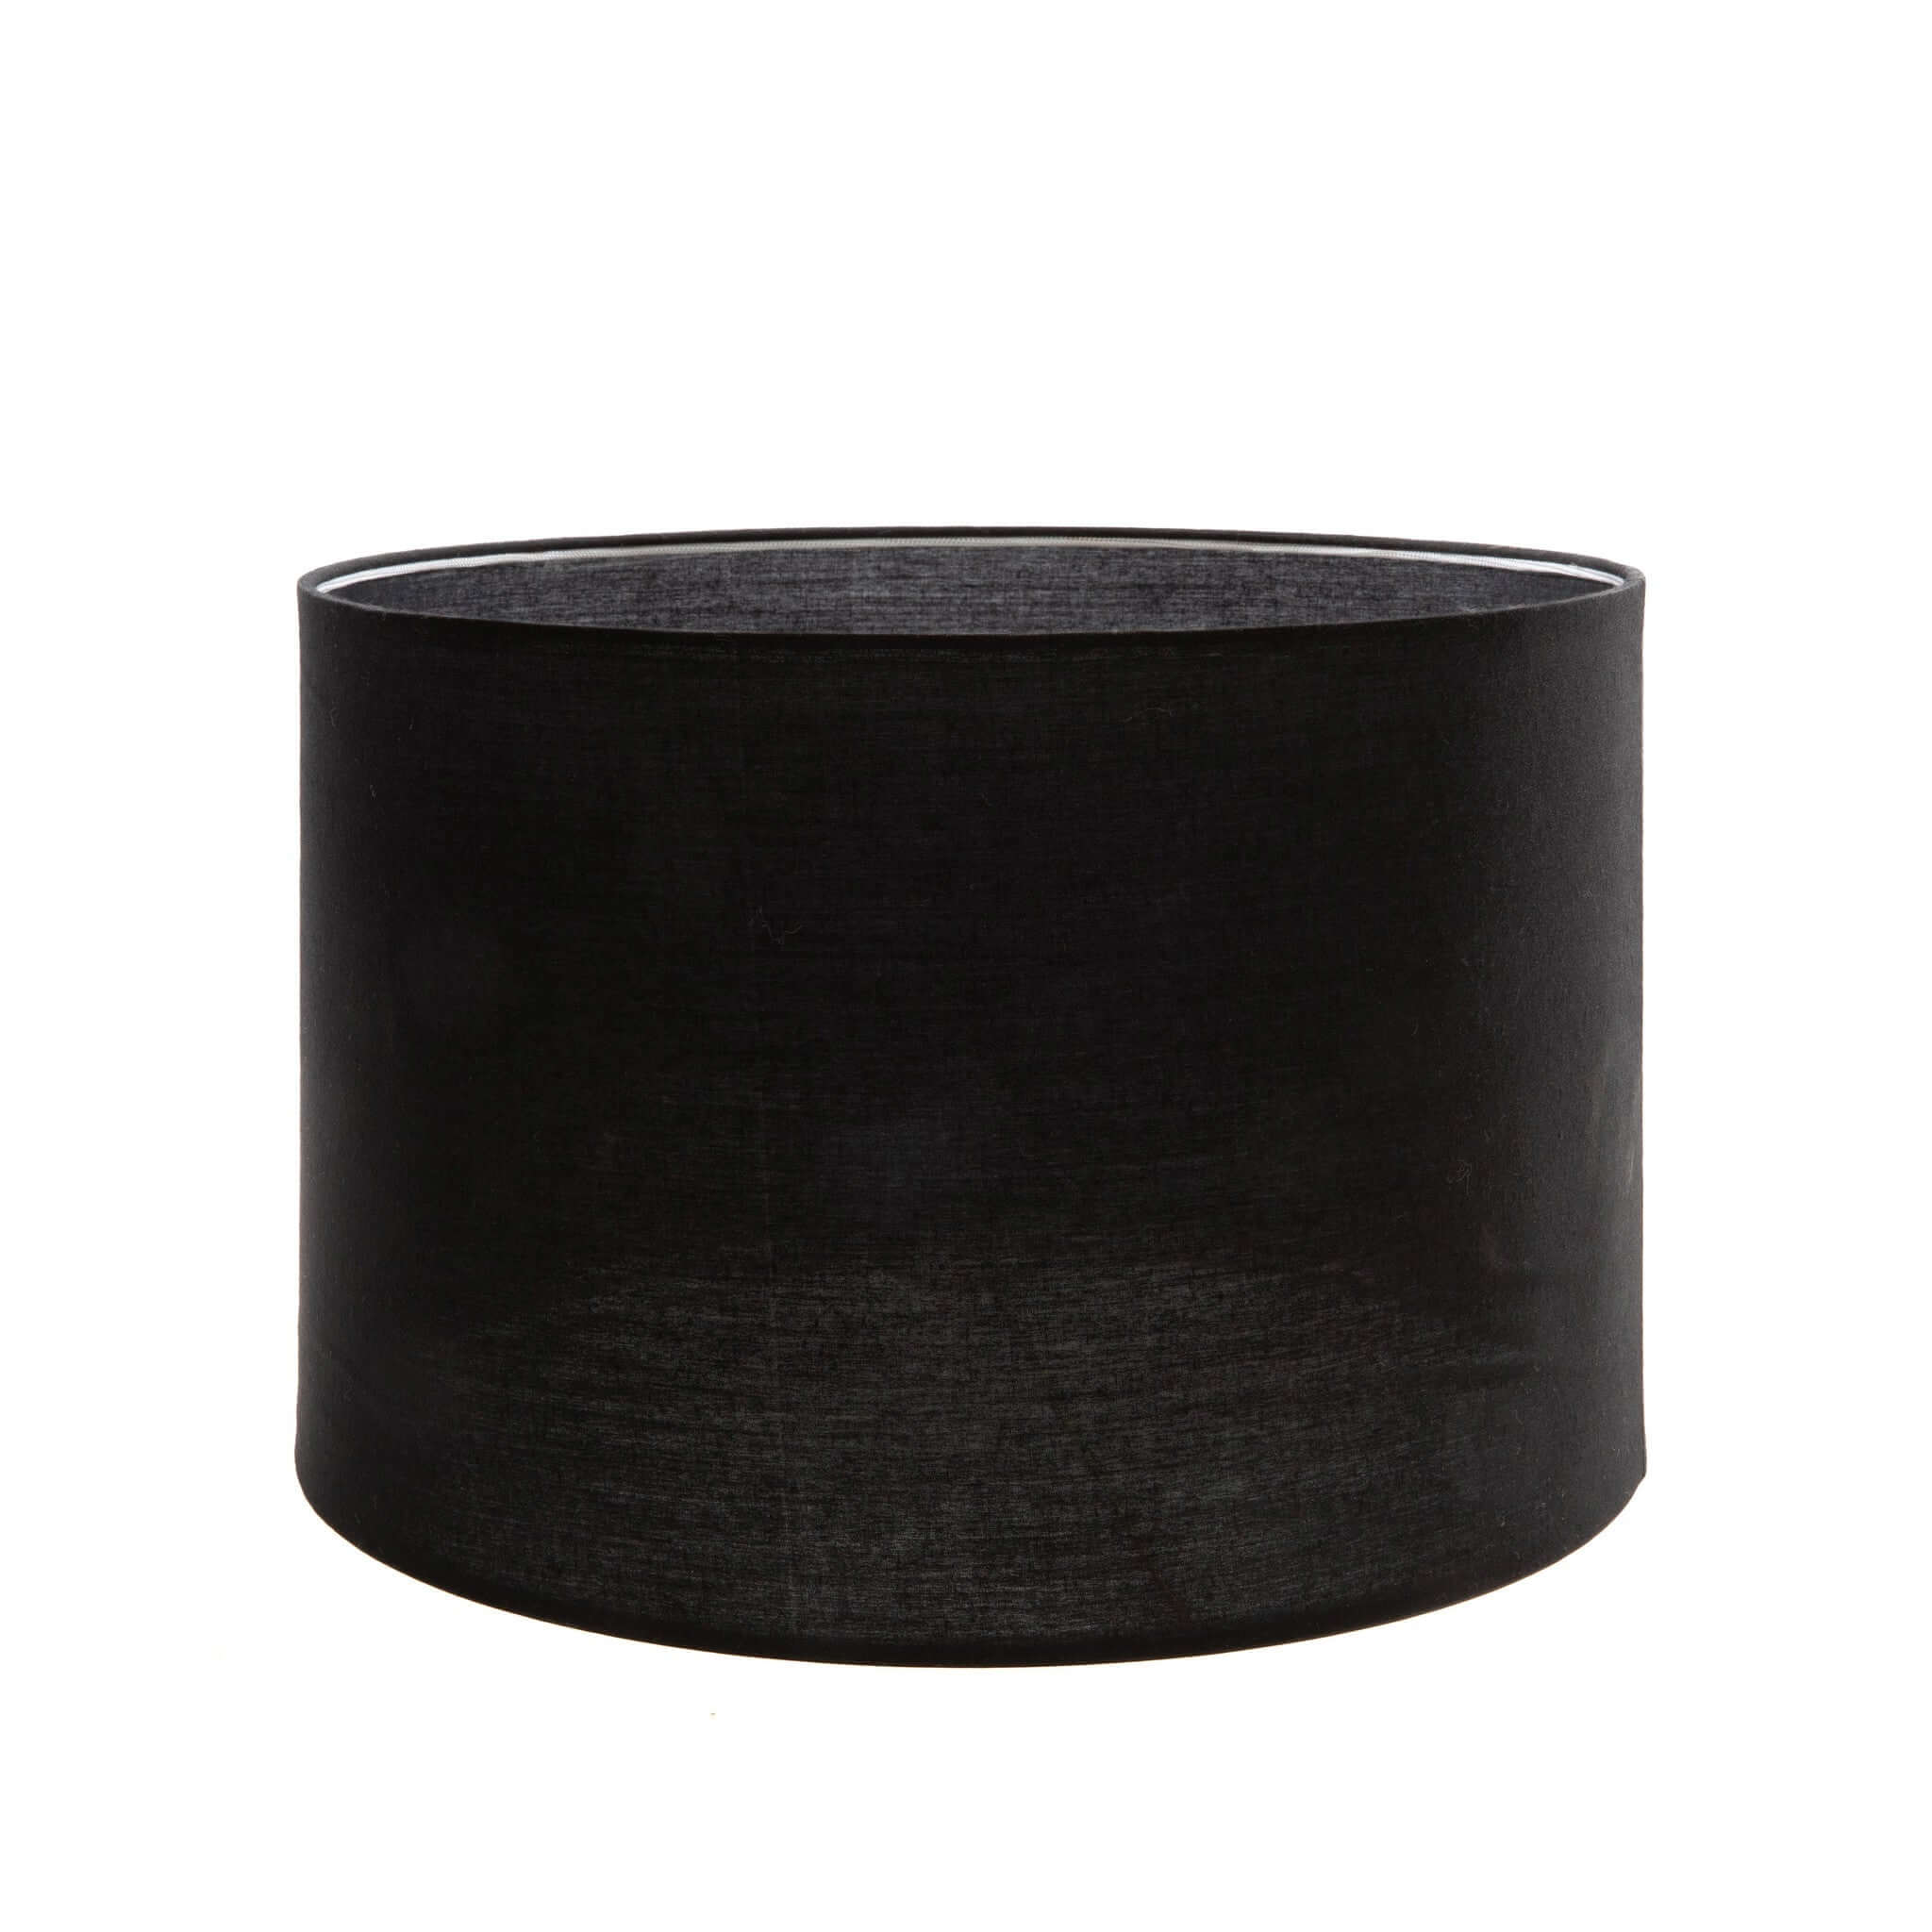 Tafellamp Teak Wood zwart Bazar Bizar Laat u inspireren door onze prachtige teakhouten tafellamp met zwarte stoffen kap die 100% sfeer creëert met zijn mooie kustlook. Het geeft een gezellig licht aan uw woonkamer, loungeruimte of slaapkamer.Elektrische k